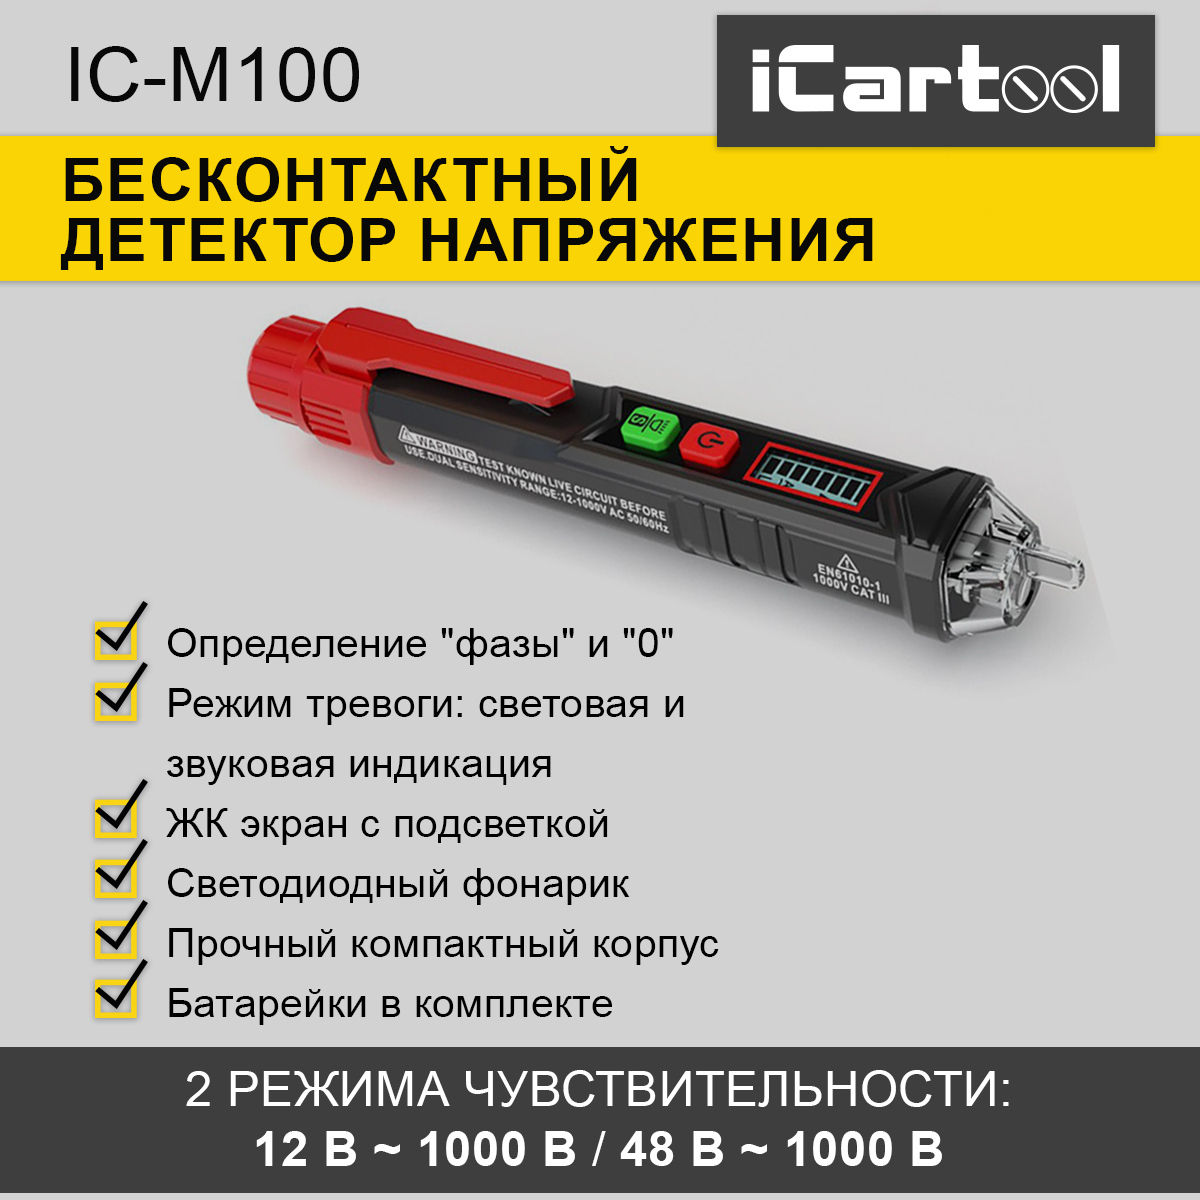 Бесконтактный детектор напряжения iCartool IC-M100 бесконтактный детектор напряжения icartool ic m100